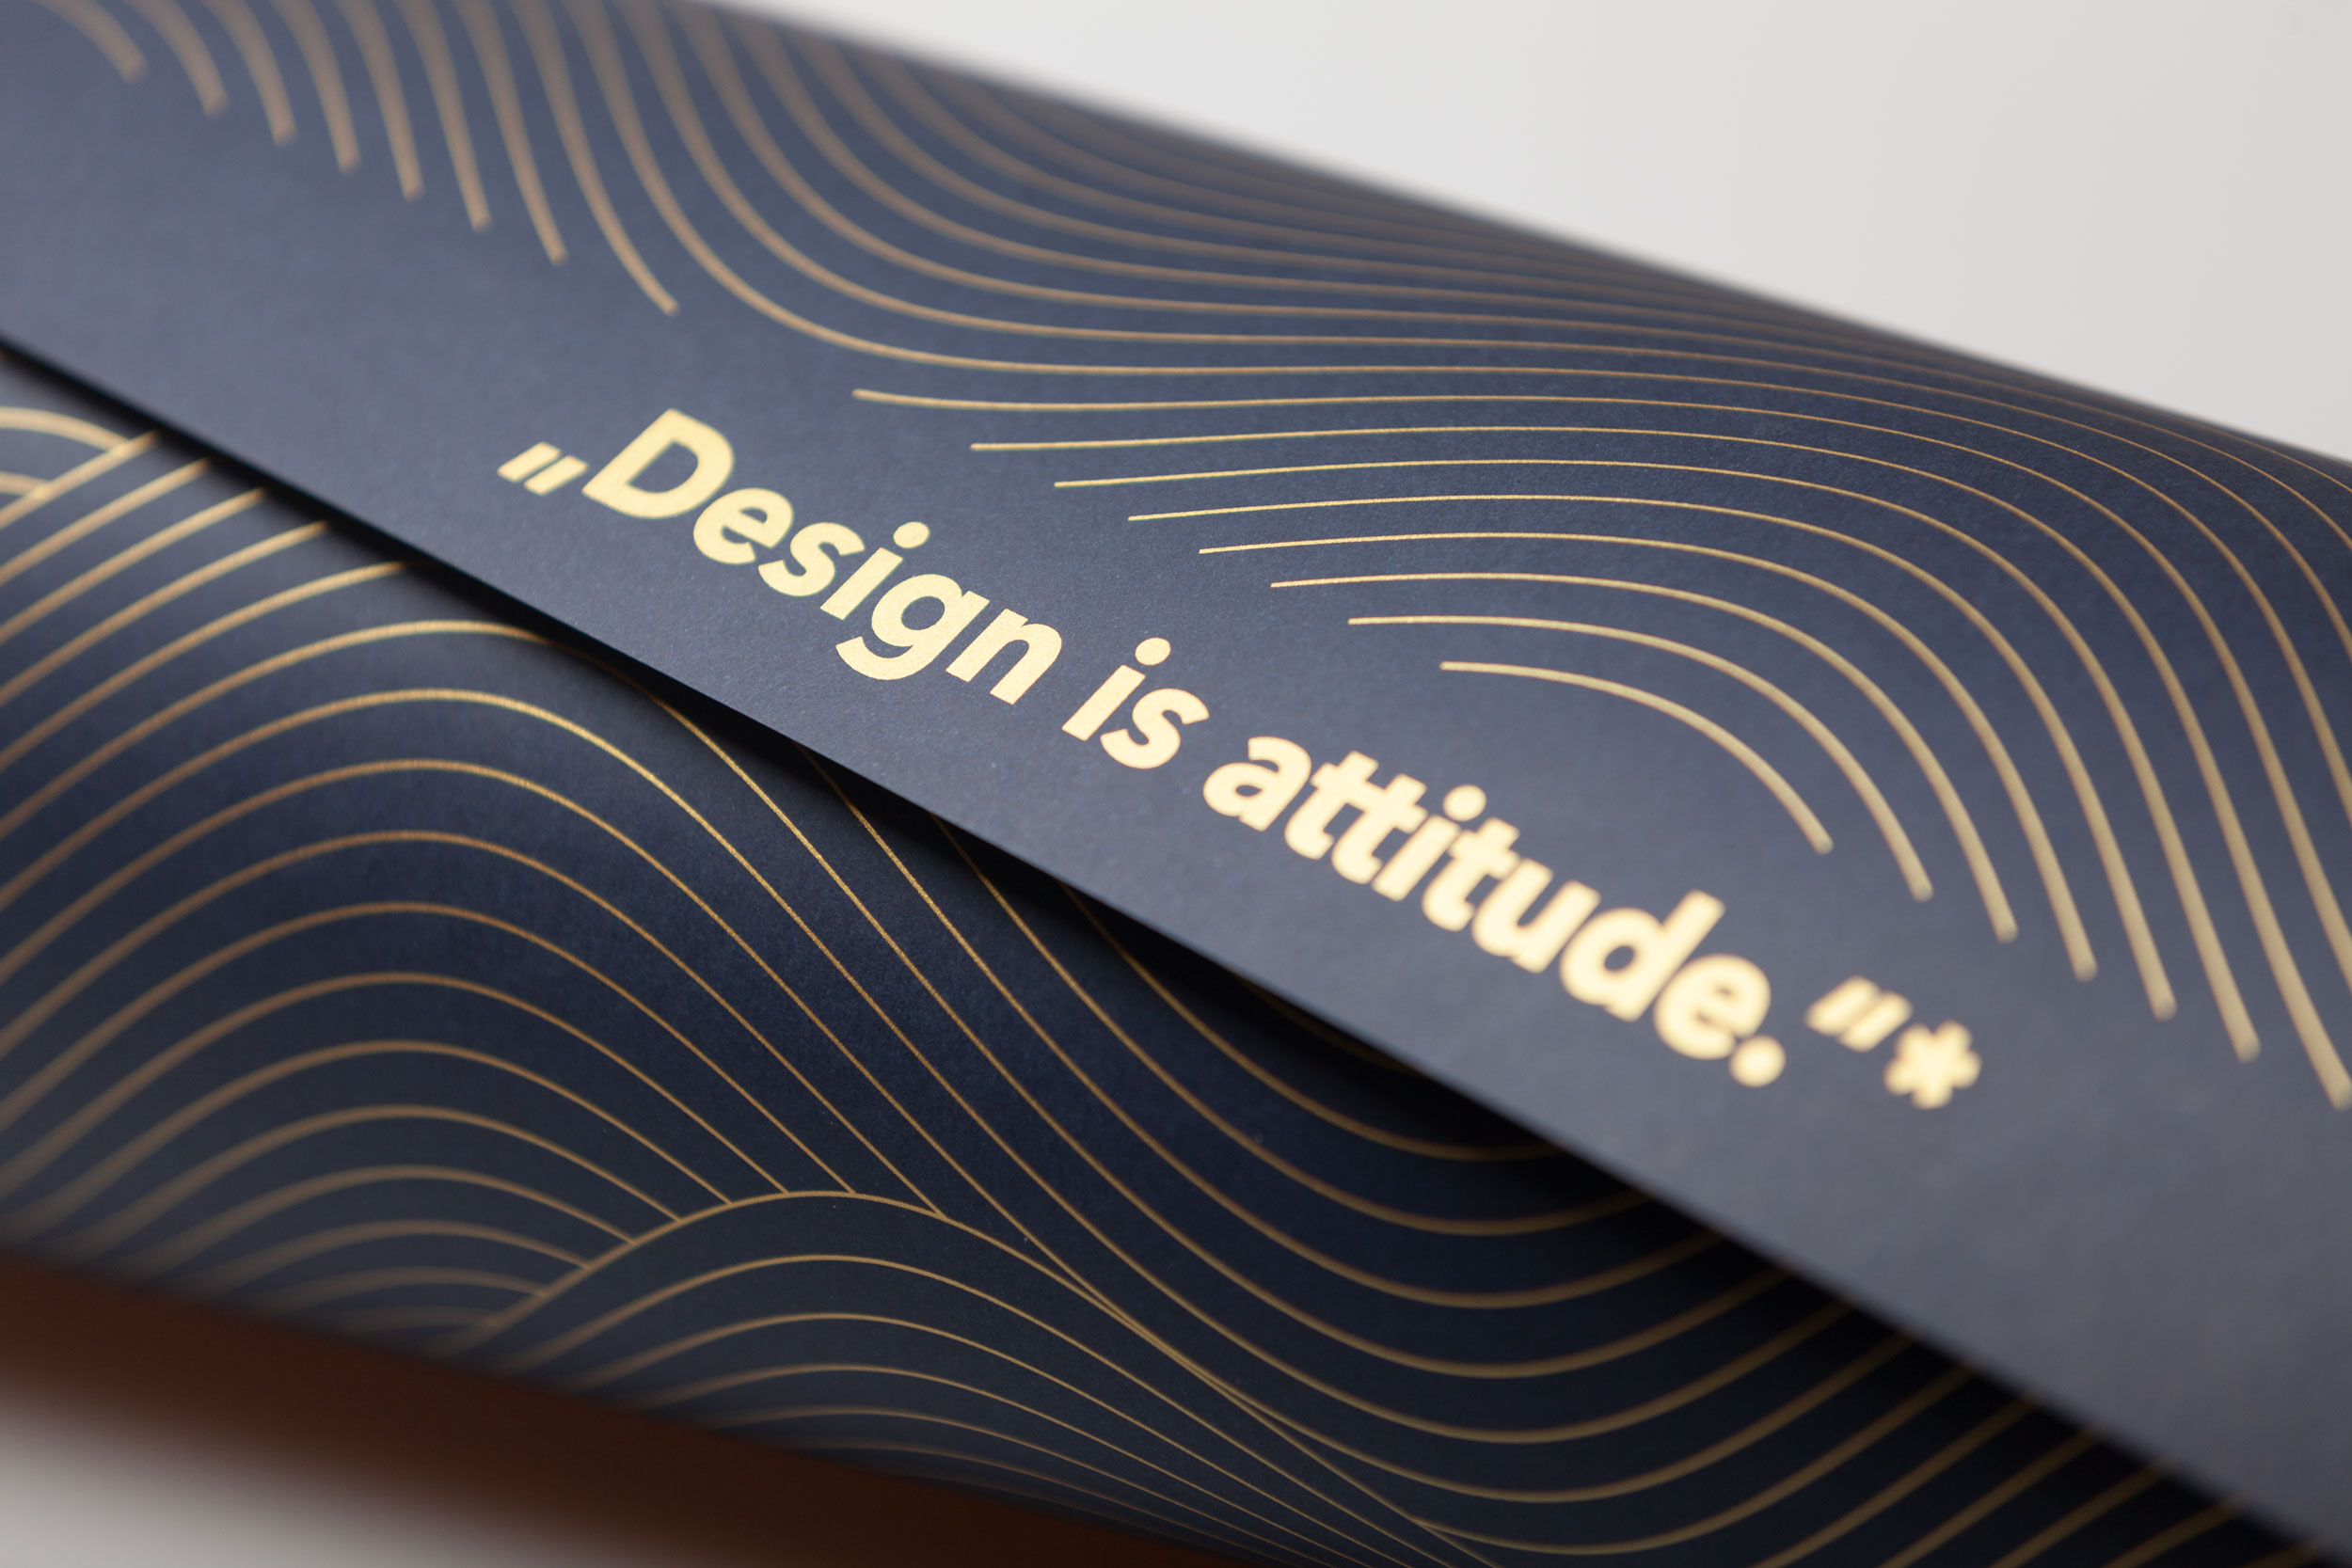 Design is attitude